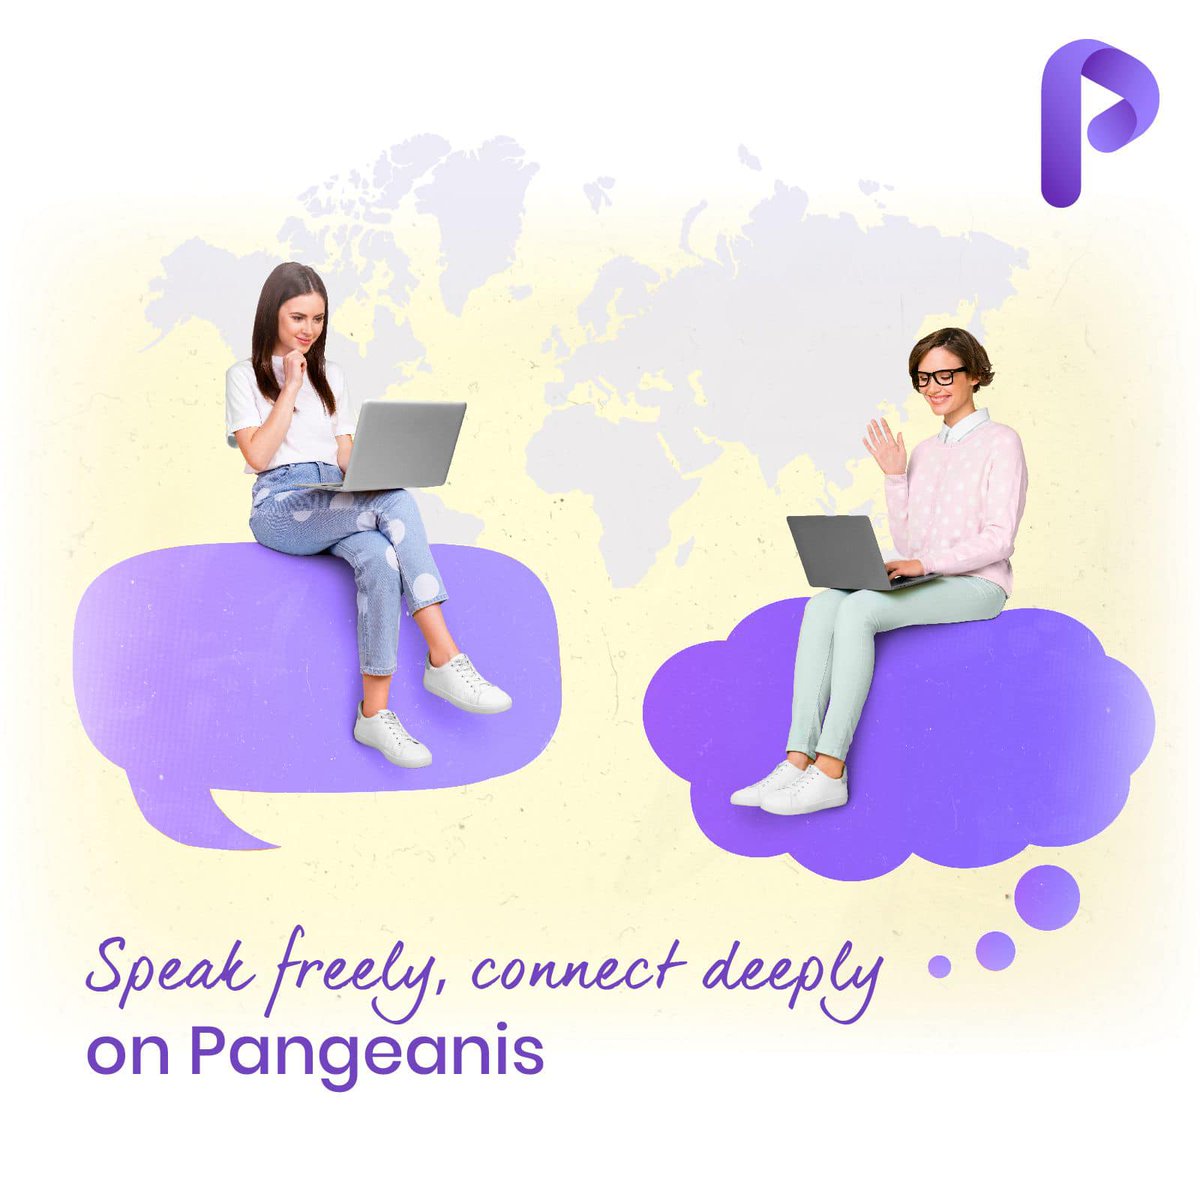 مع ميزة محادثات بنجيانيز، يمكنك تجربة الاتصال العميق والتواصل مع الأشخاص من مختلف أنحاء العالم بحرية. 
#socialmedia #app #social #digital #pangeanis #global #world #connectivity #chat #chatting #creativity #algorithms #artificialintelligence #bengalore #mangalore #siliconbeach